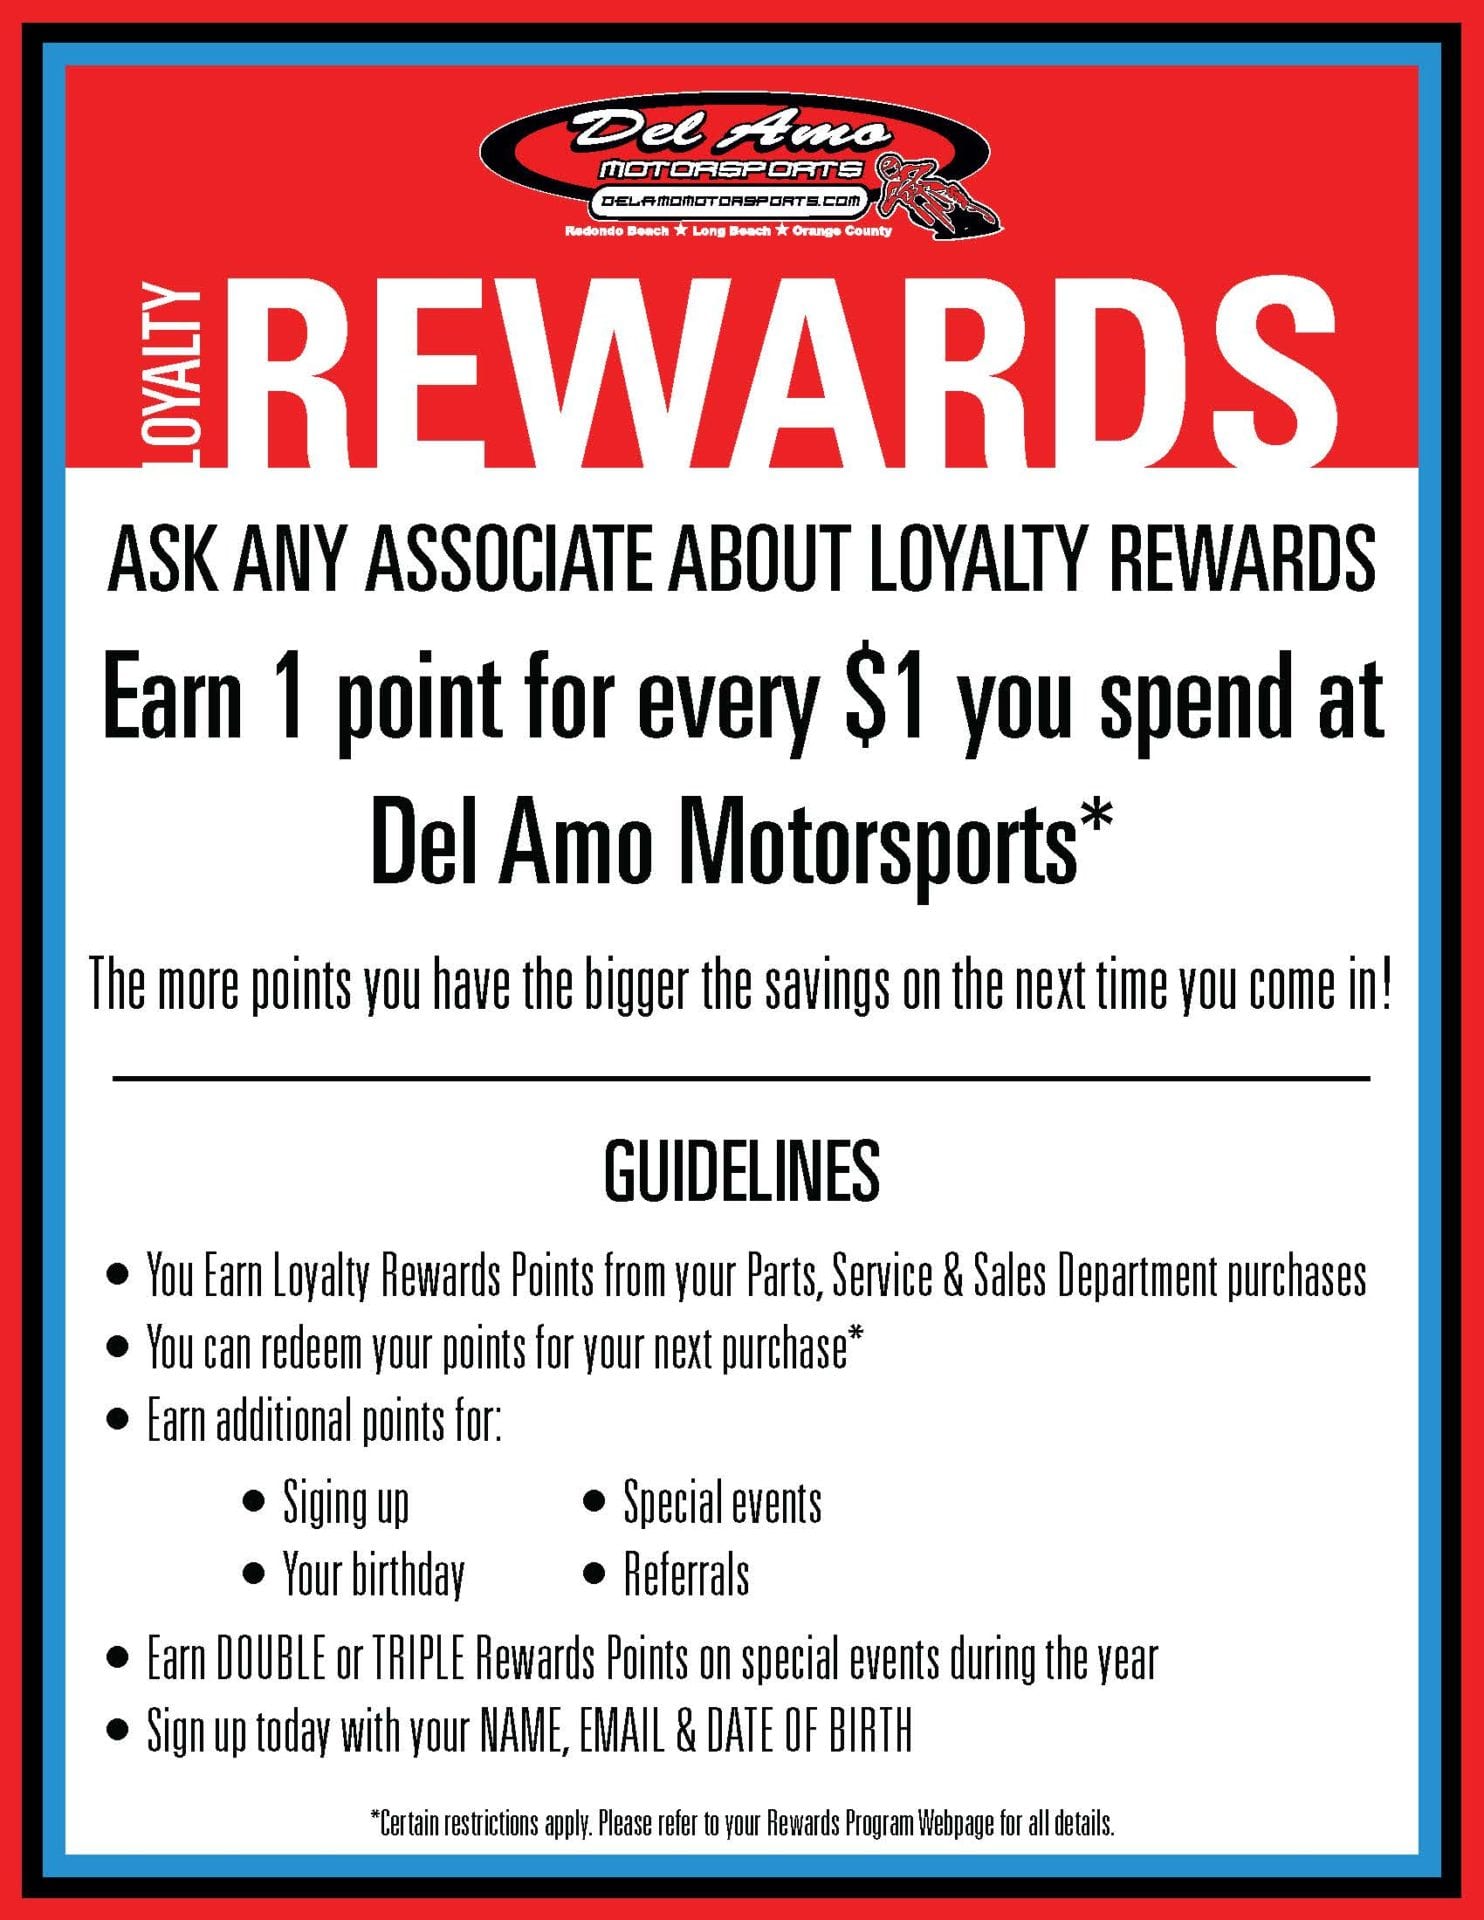 Del Amo Motorsports | Loyalty Rewards Program